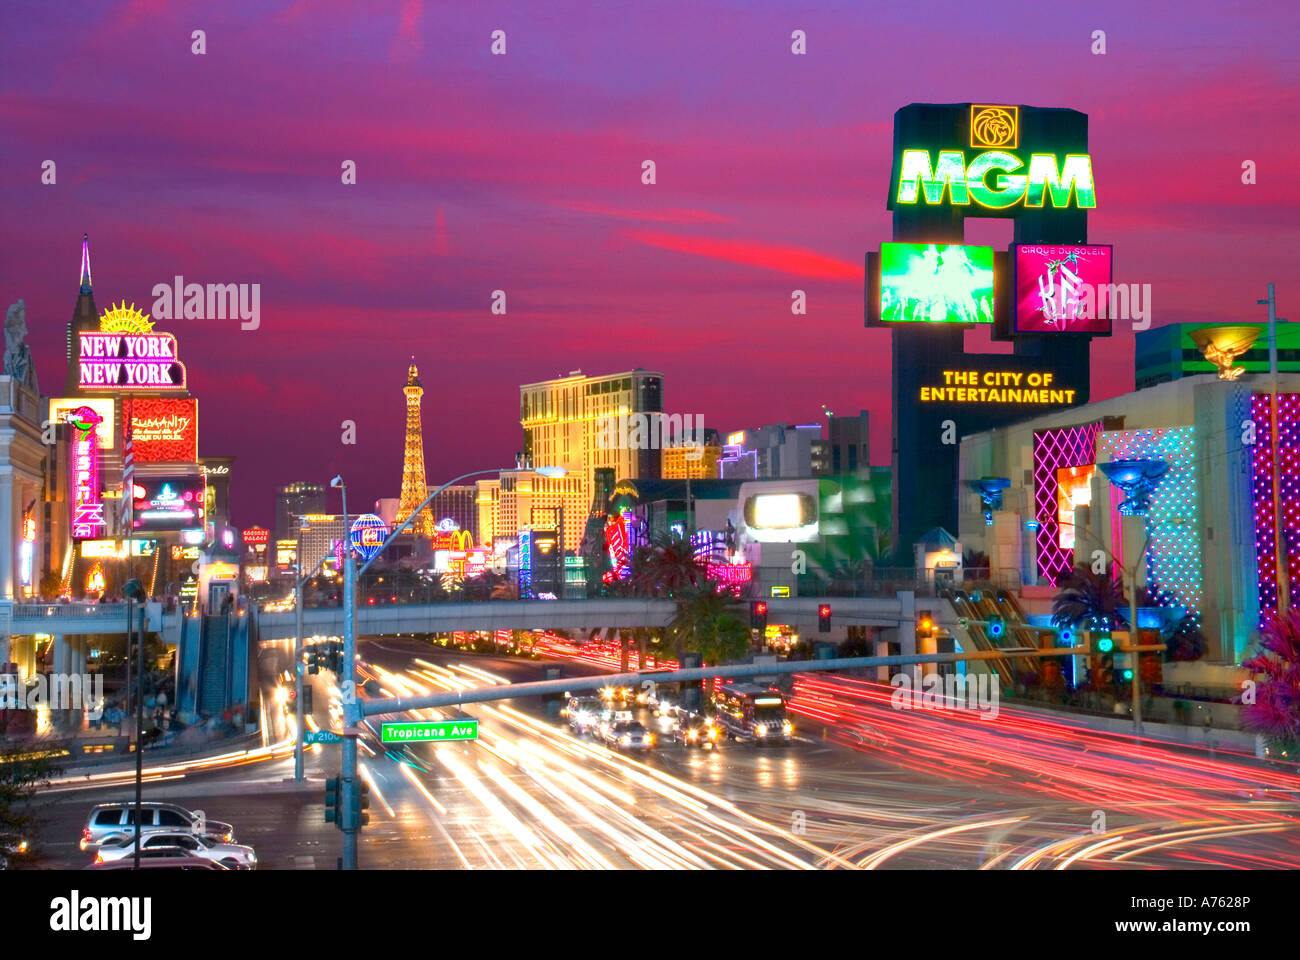 Las Vegas.Nevada USA Gambling Casinos Stock Photo